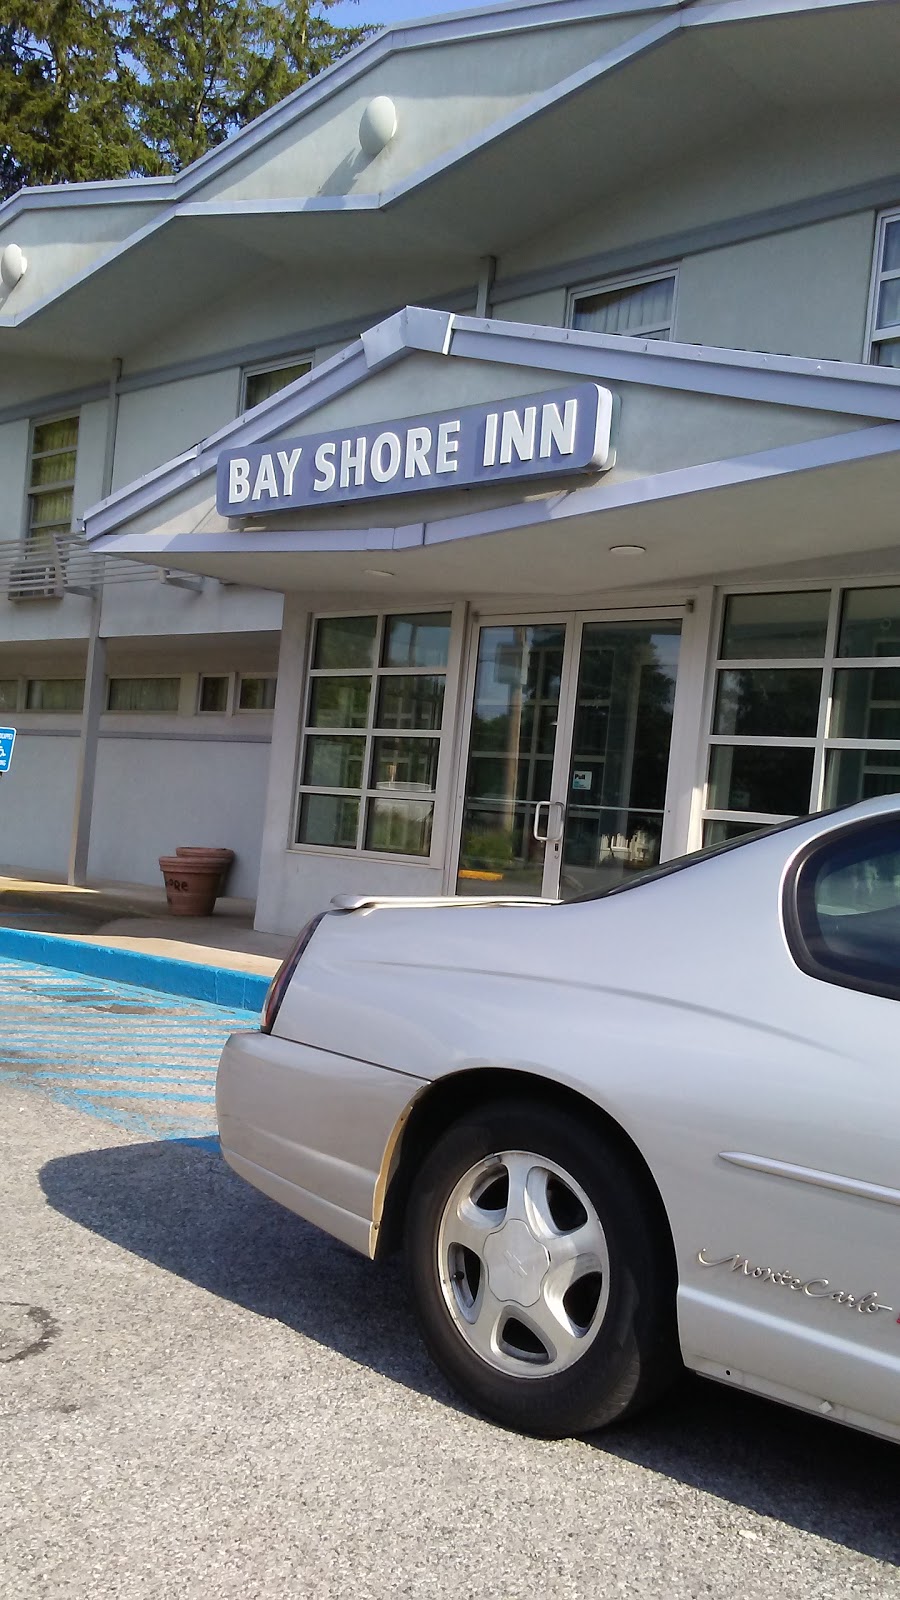 Bay Shore Inn | 300 Bay Shore Rd, Bay Shore, NY 11706 | Phone: (631) 666-7275